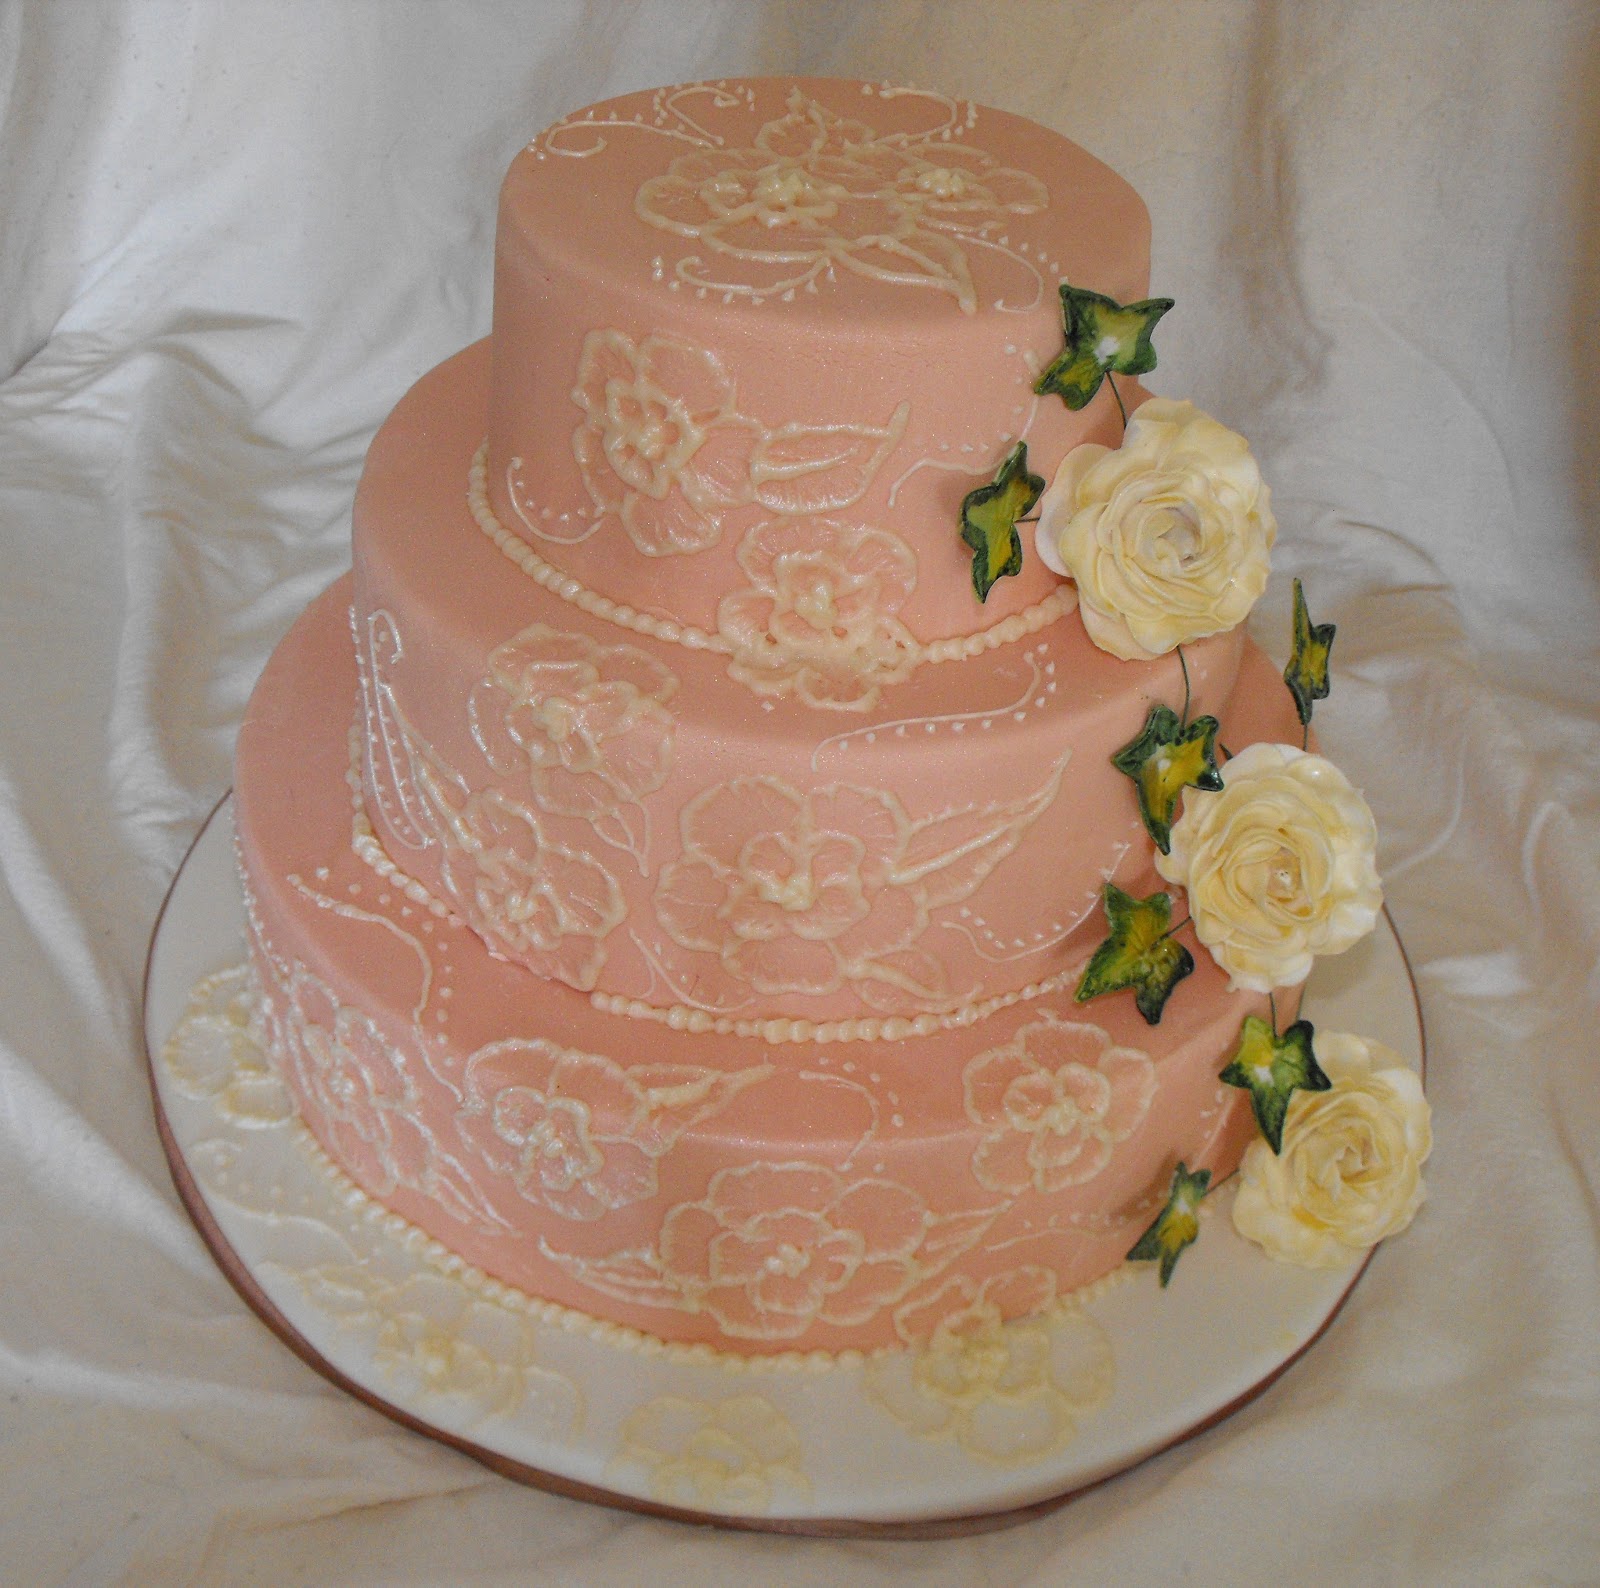 Caroline's Cake Craft : Vintage Style Wedding Cake